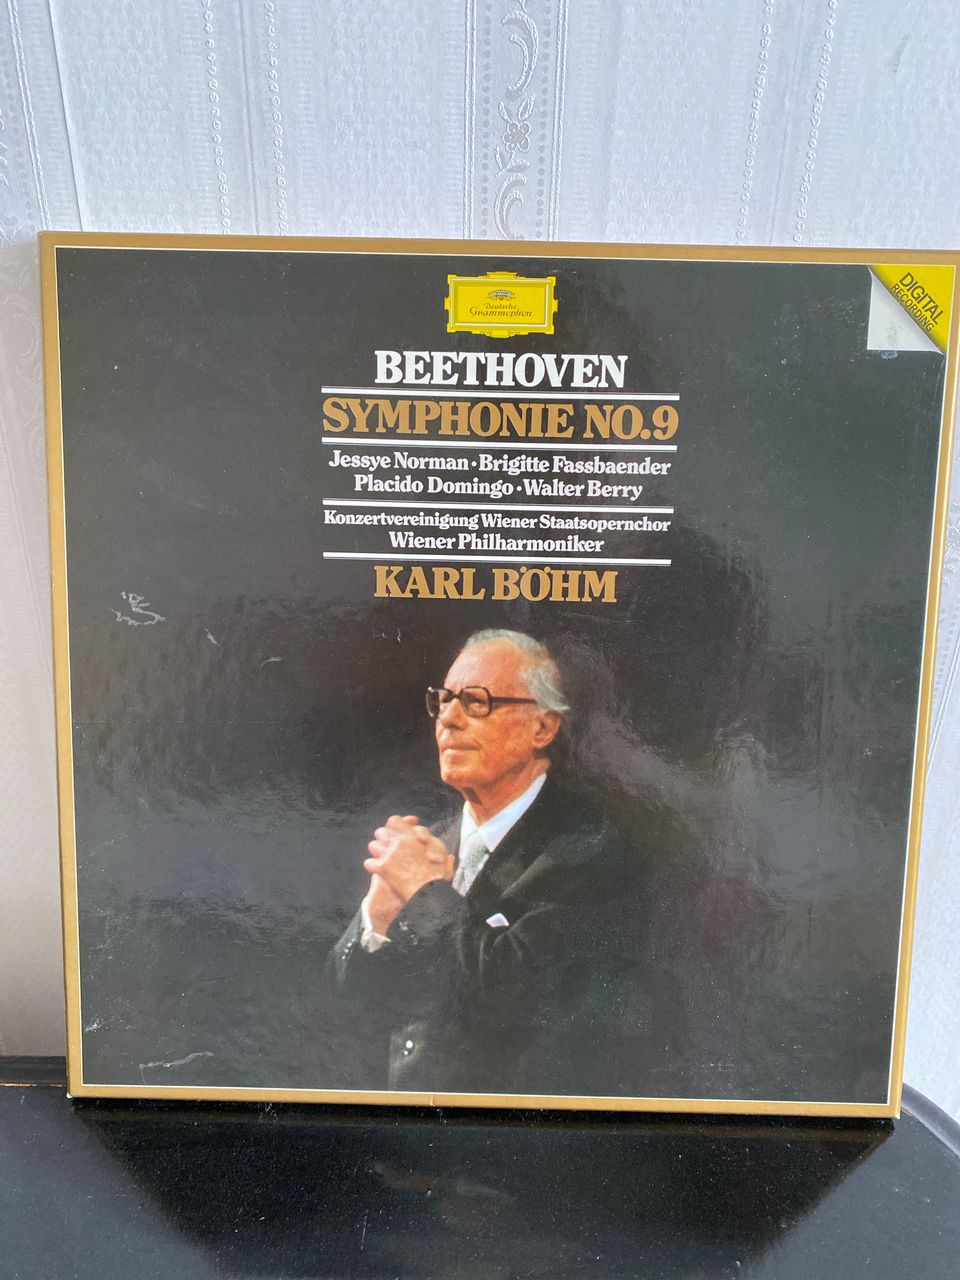 Beethoven, Symphonie no 9, Deutsche Gramophon